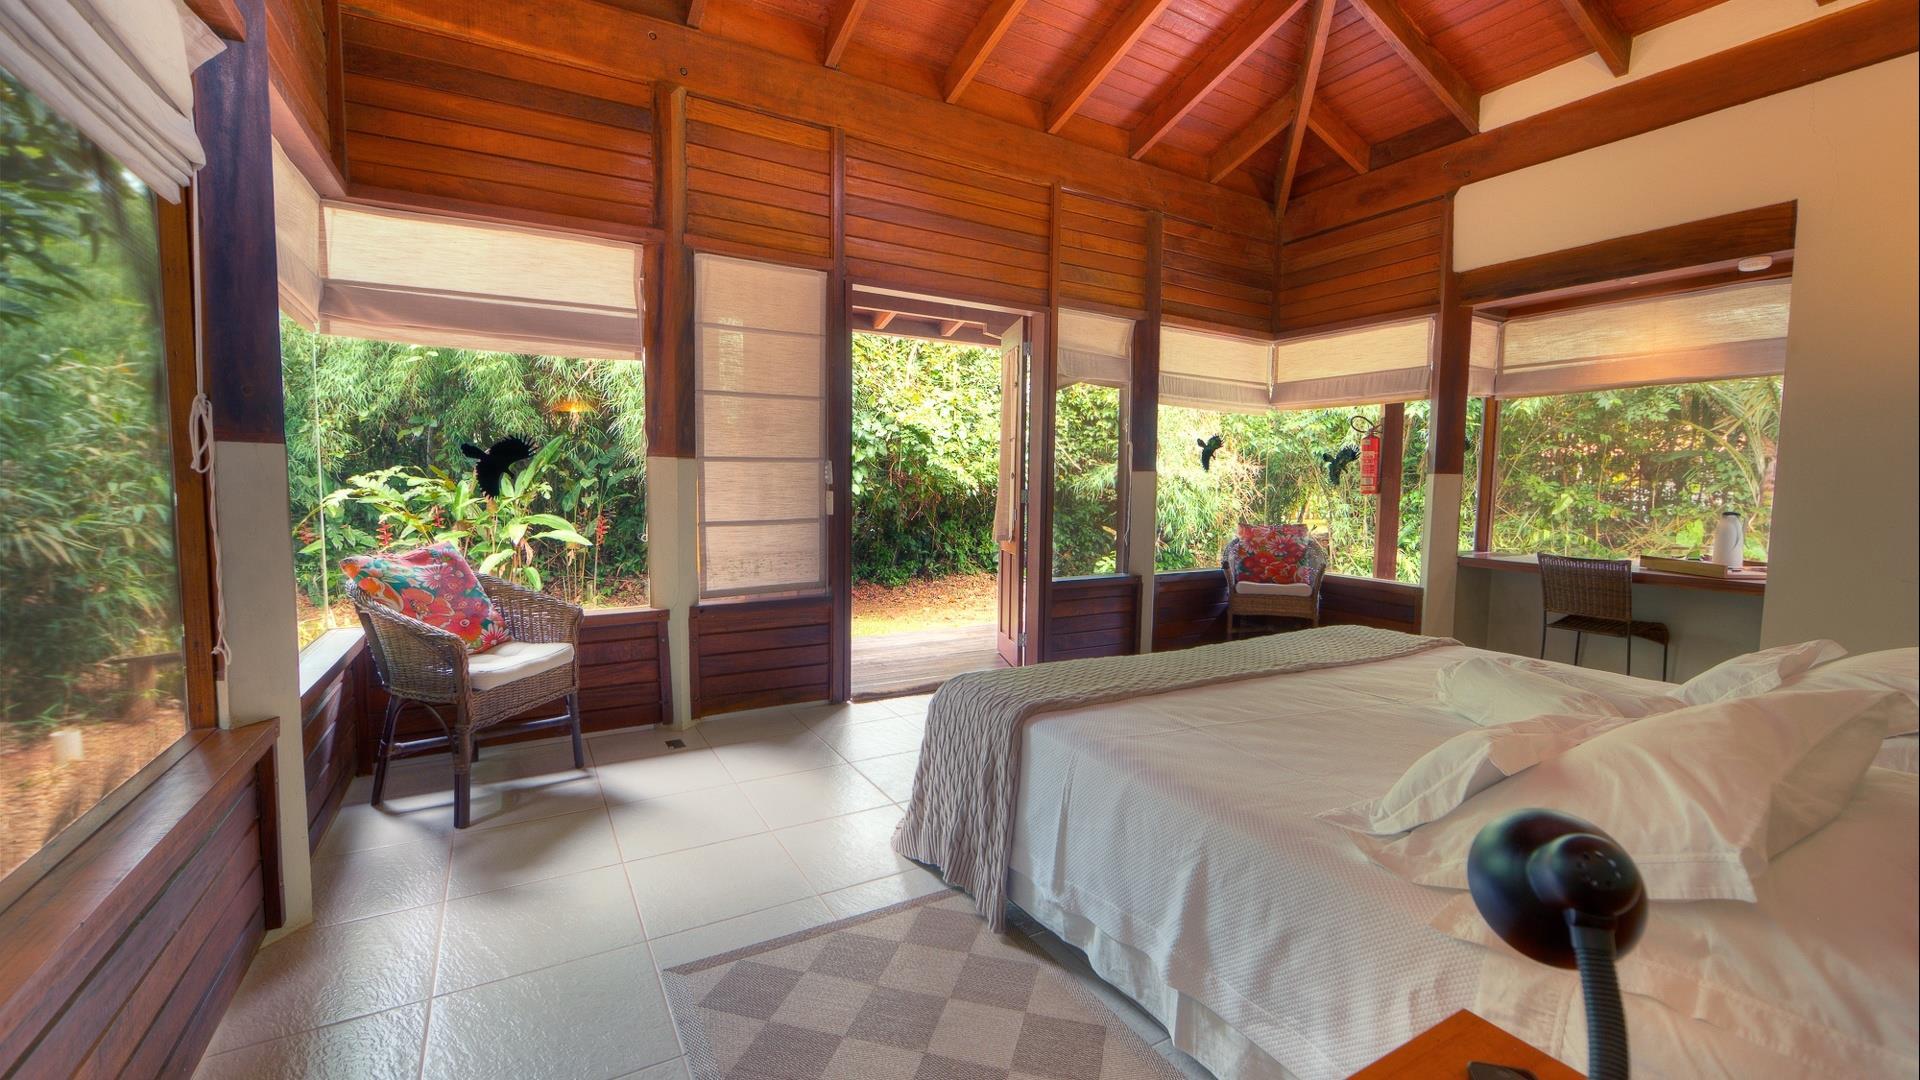 Cristalino Jungle Lodge in Alta Floresta, Brazil